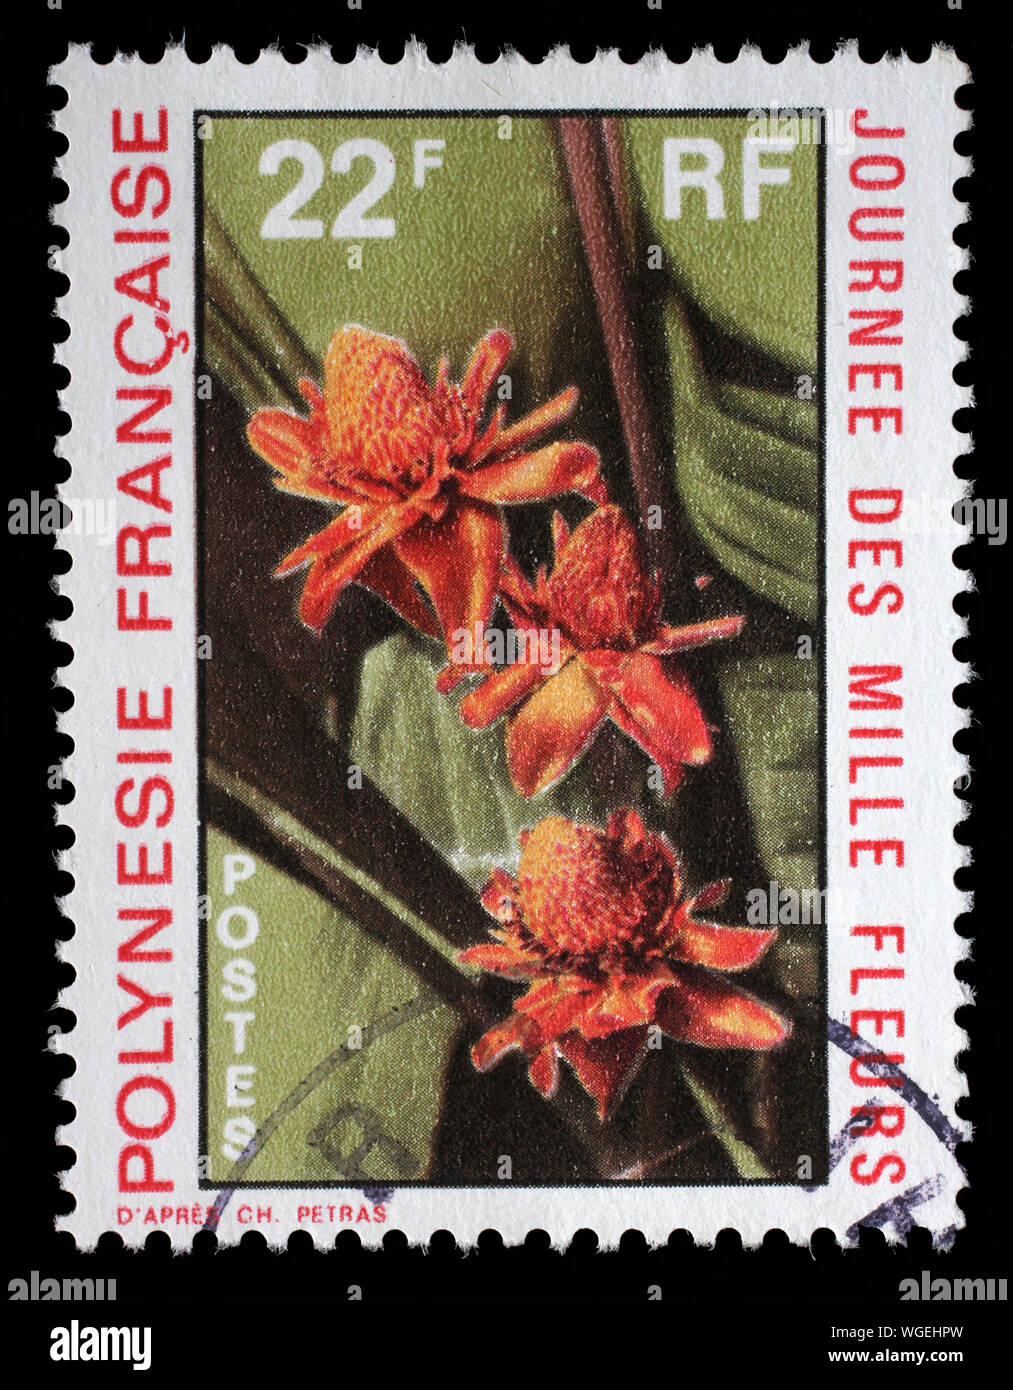 Timbro rilasciato in Polinesia francese mostra Nicolaia Elatior, giorno di mille fiori, circa 1971. Foto Stock